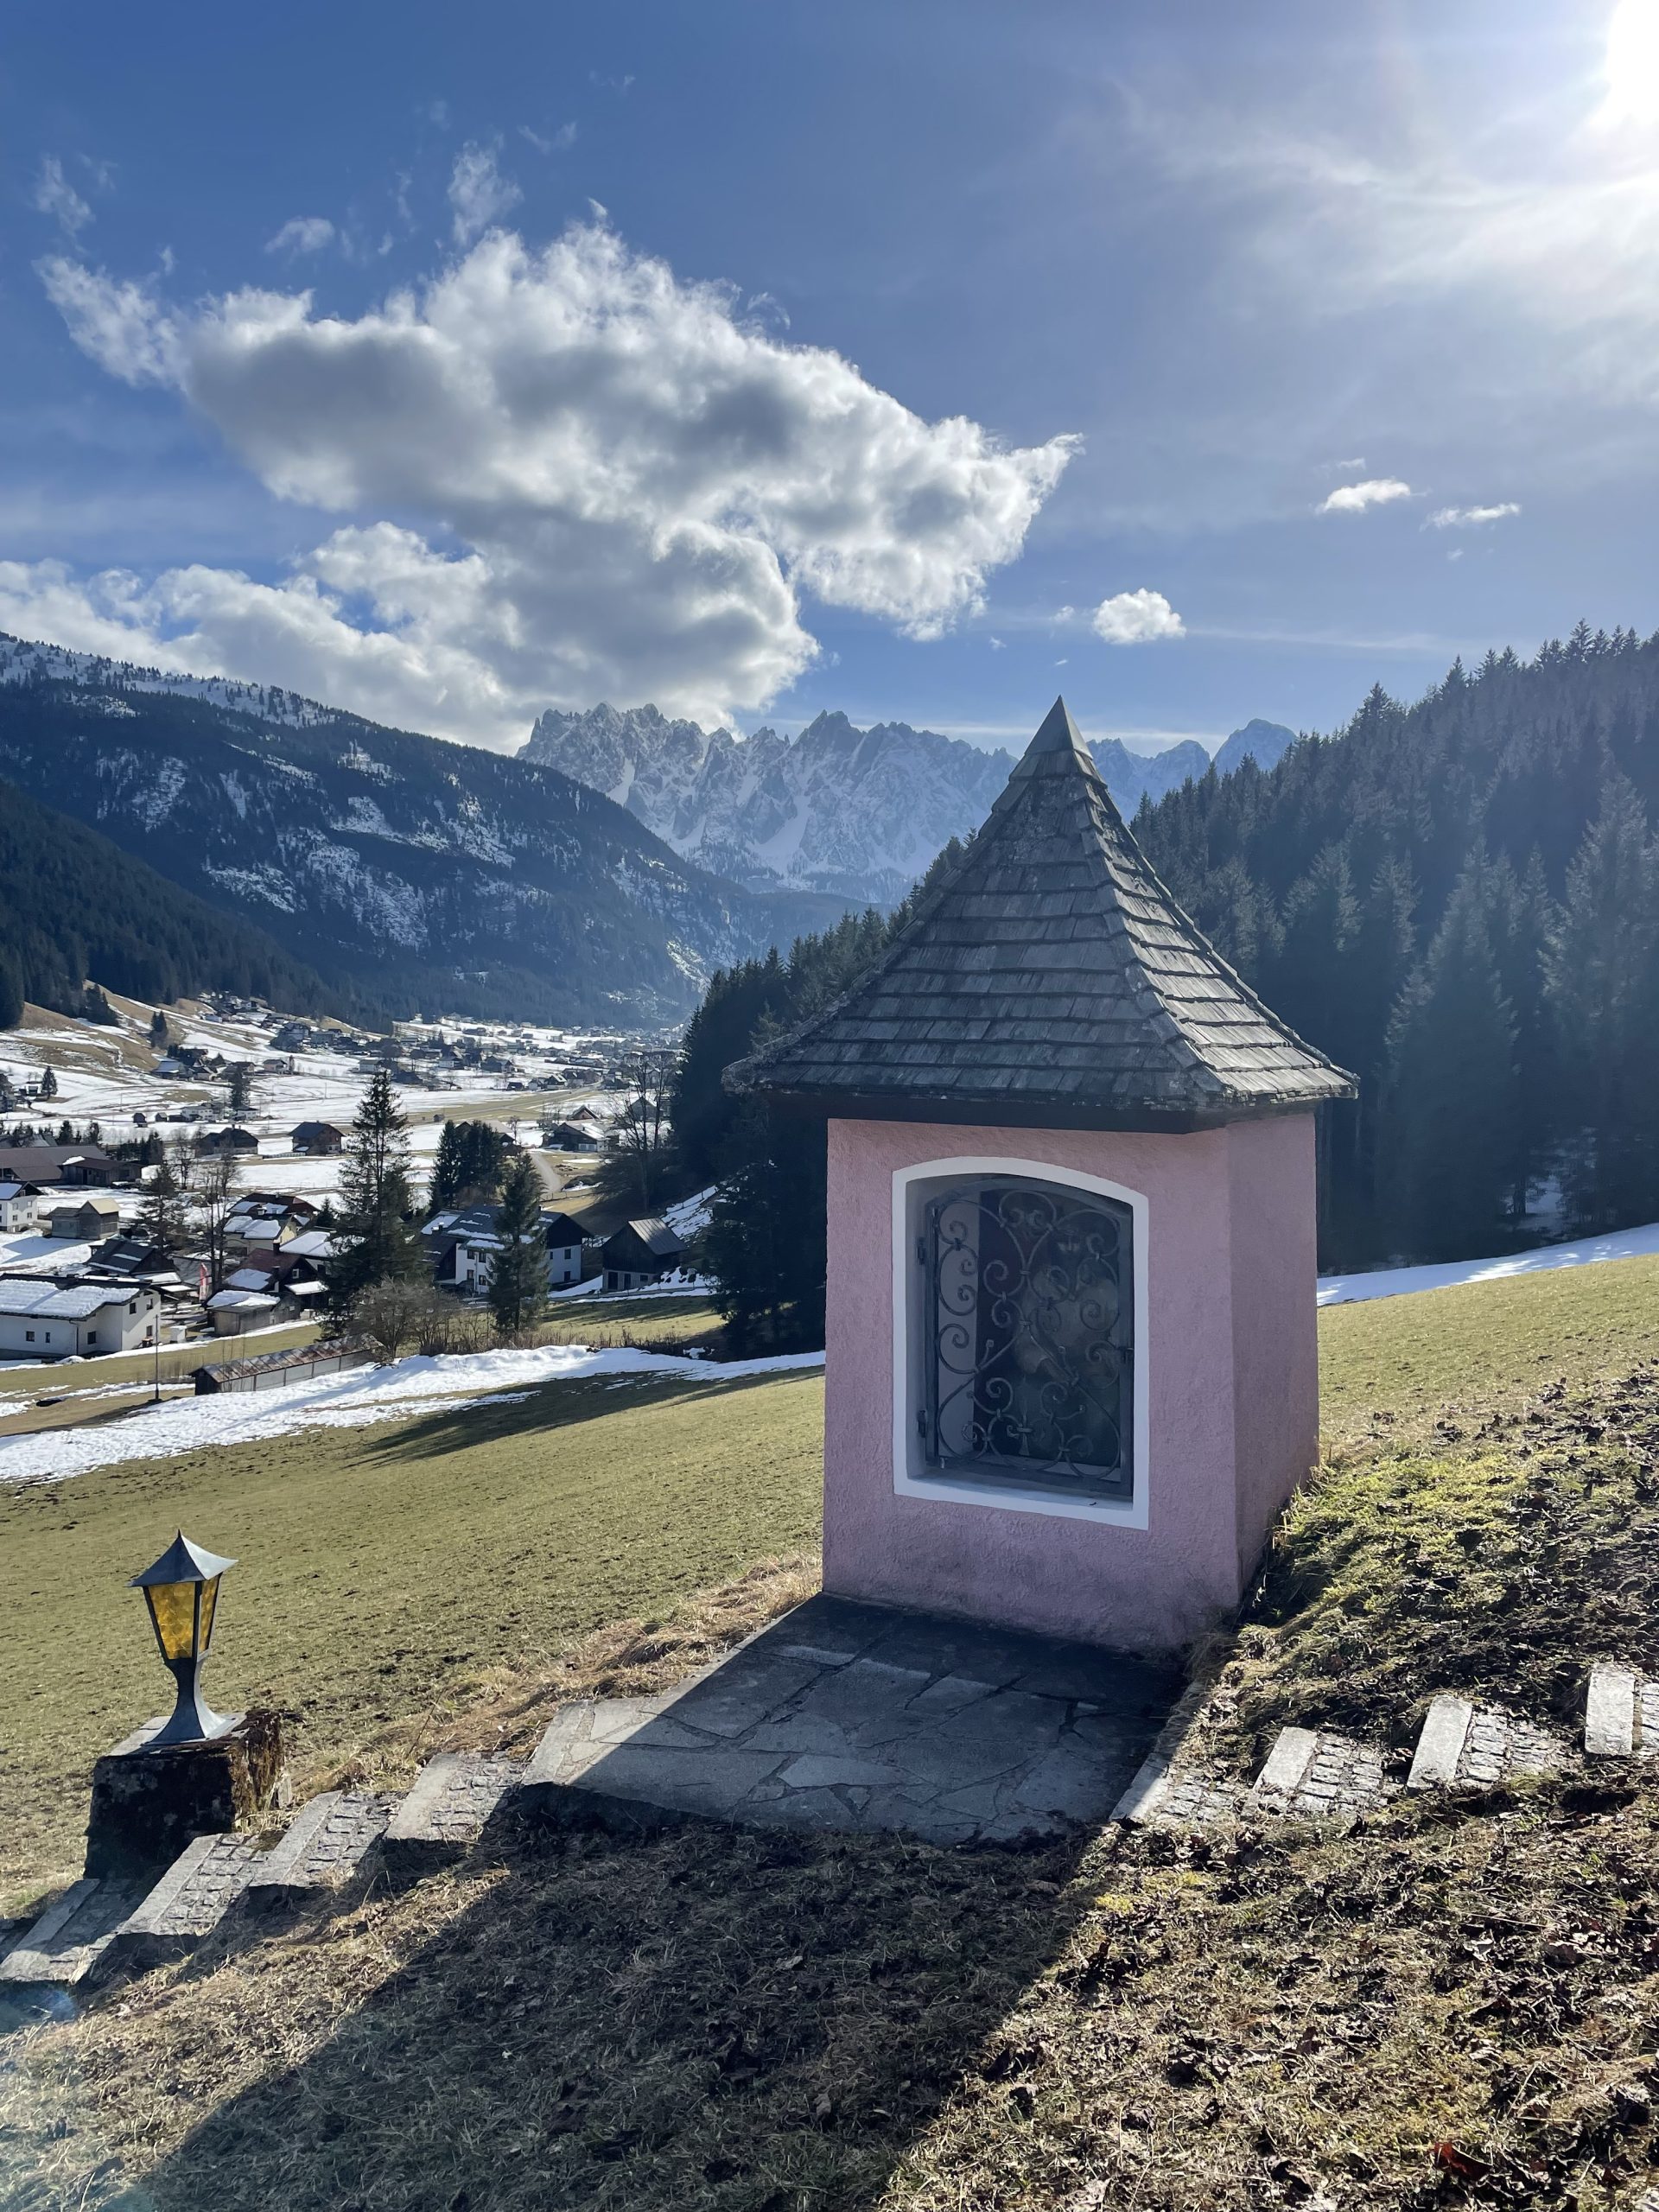 Discover Austria’s Dachstein region